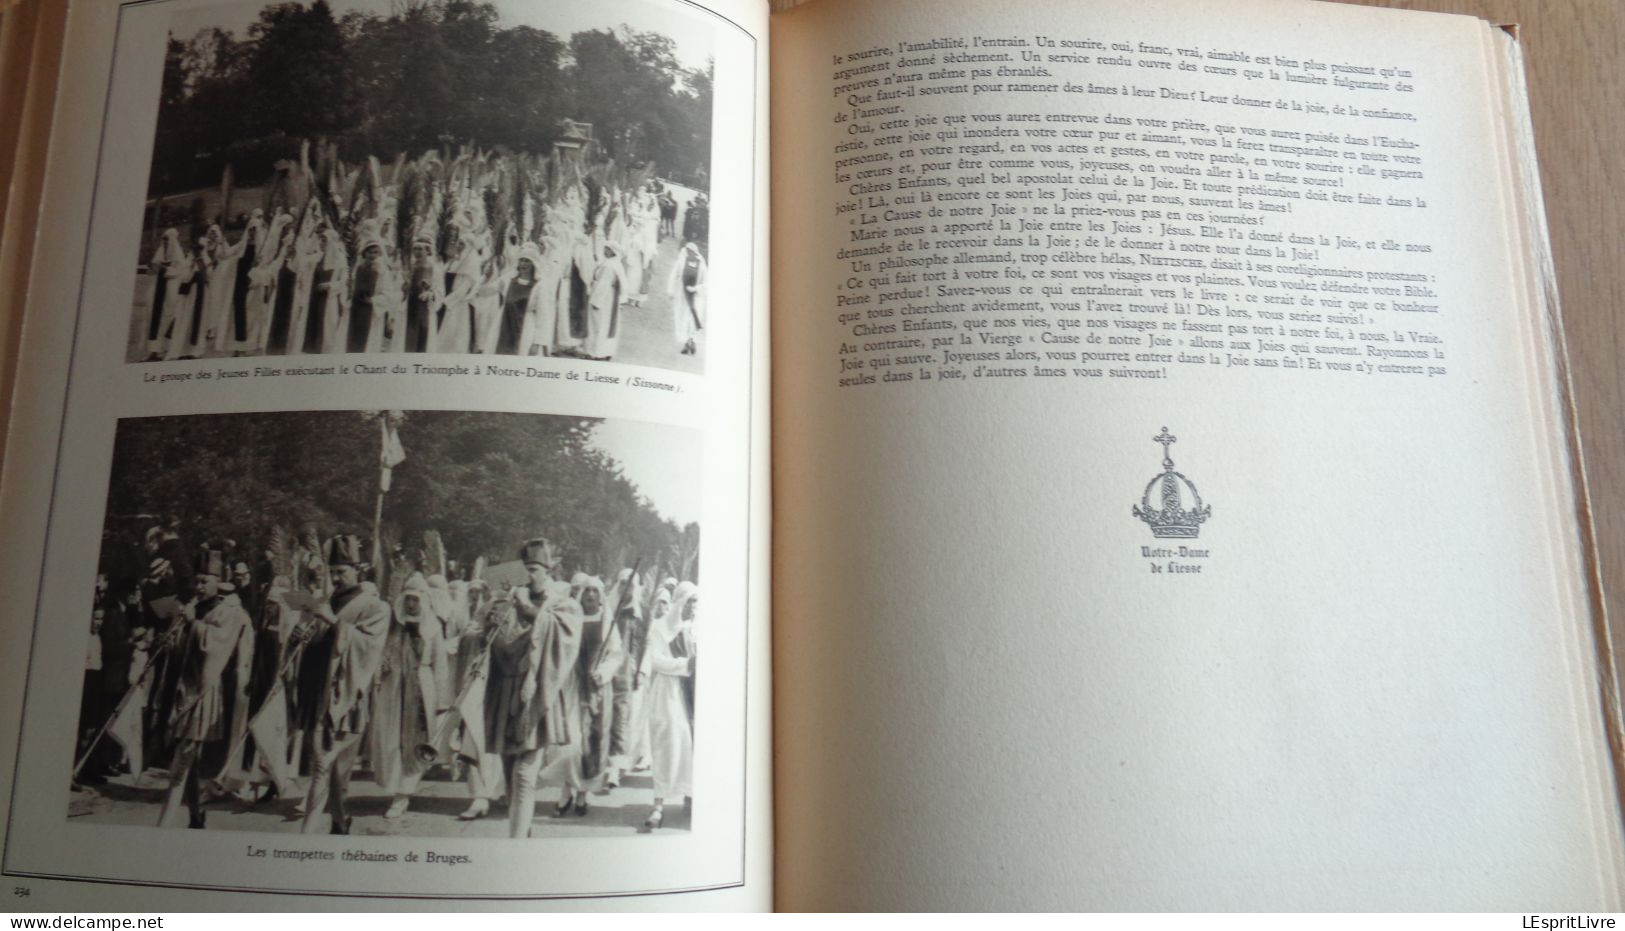 NOTRE DAME DE LIESSE 1134 1934 3 ème Congrès Marial National Régionalsime Religion Culte Laon Congrégations Pèlerinages